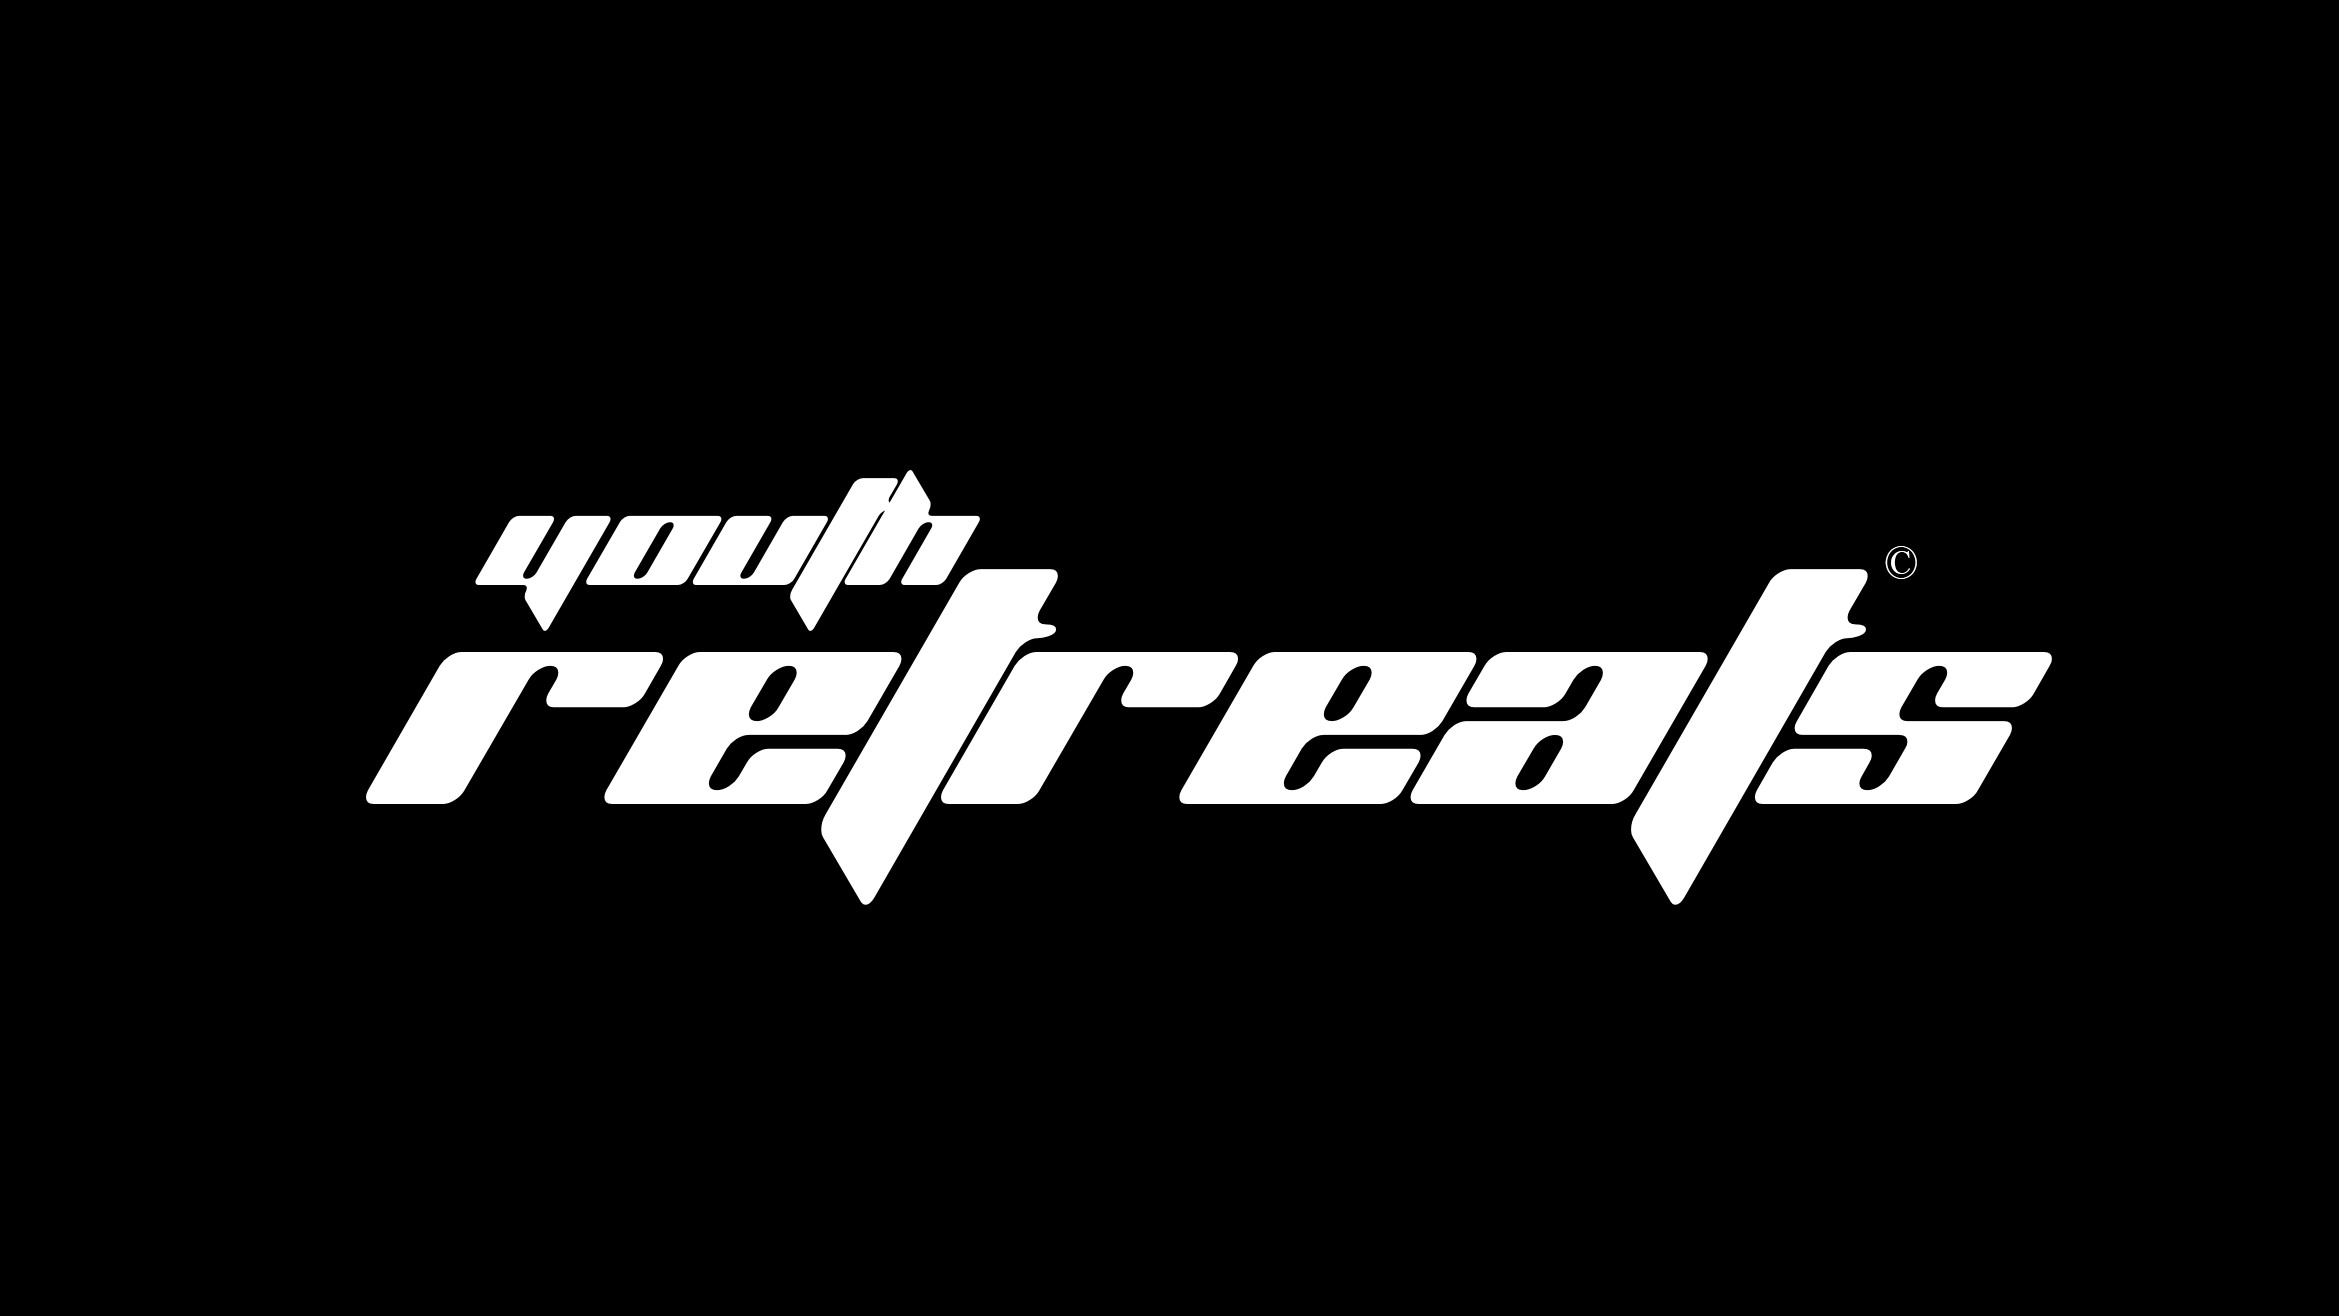 Youth Retreats